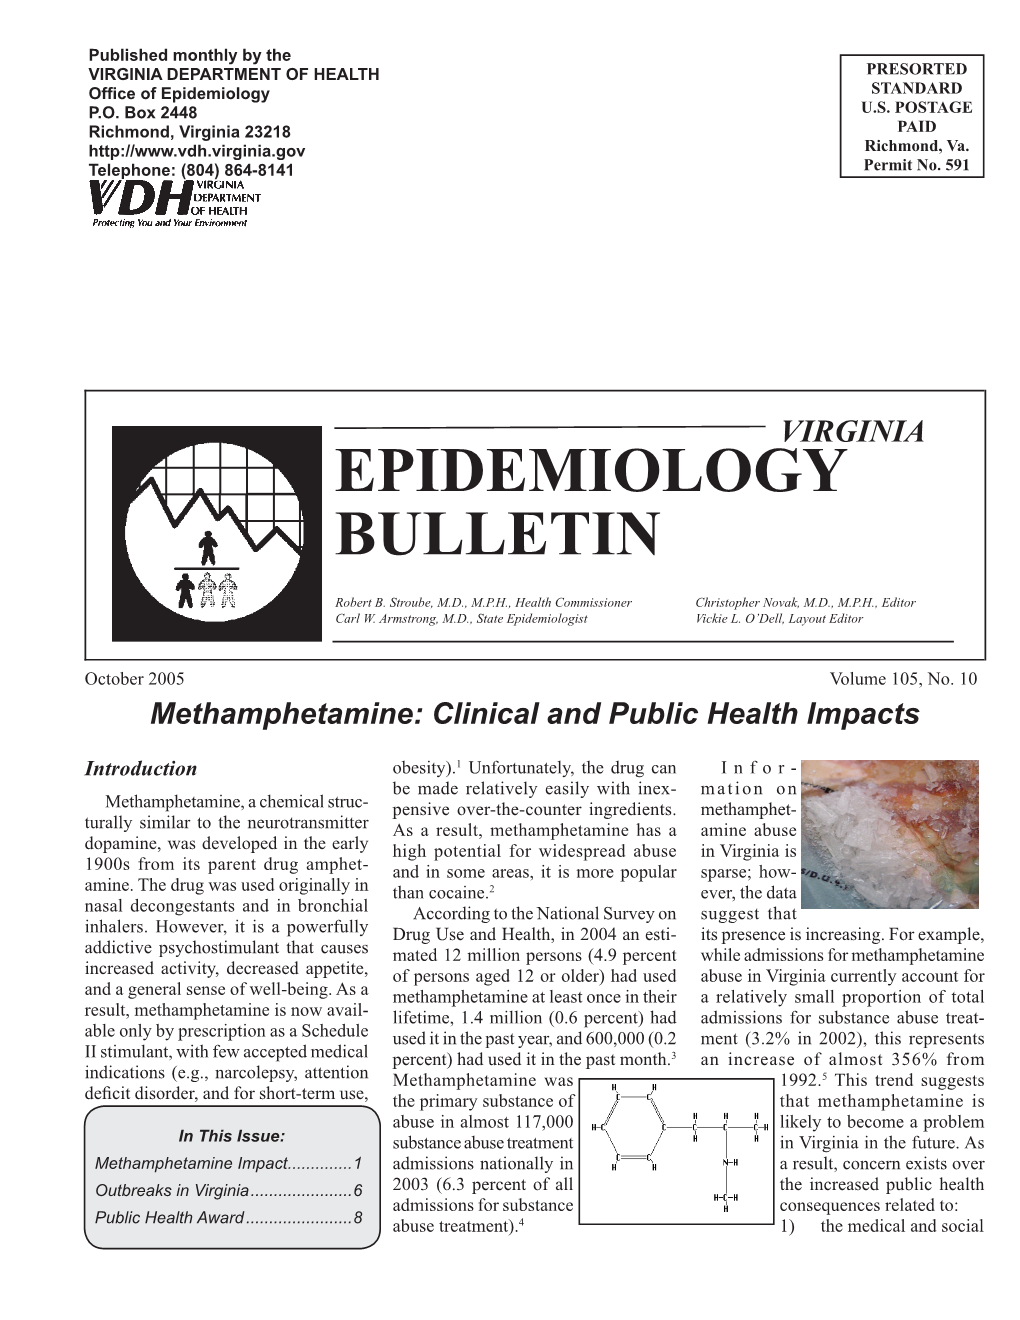 Epidemiology Bulletin